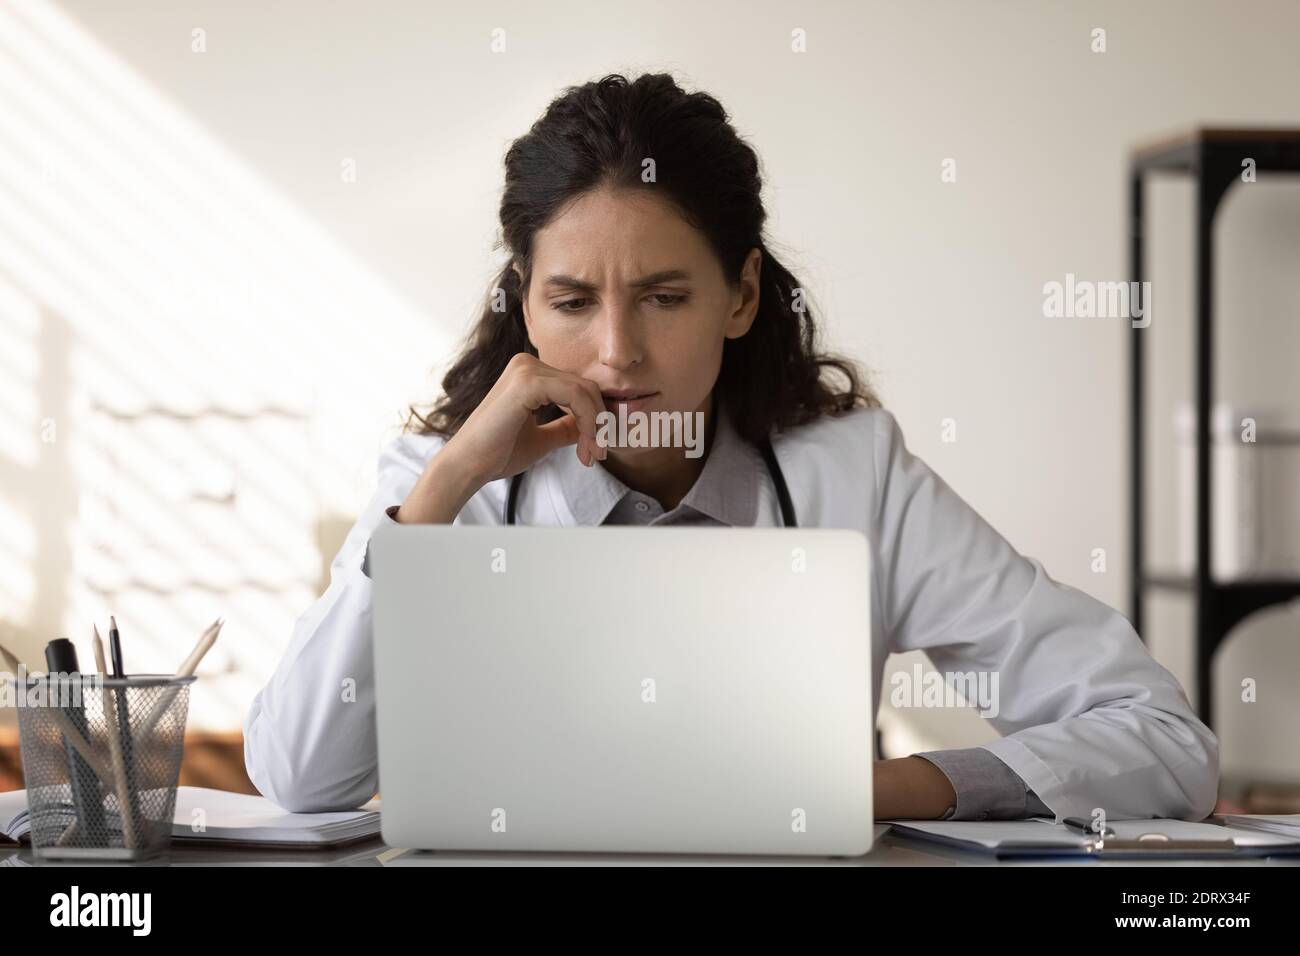 Une femme pensive médecin travaille sur la pensée d'un ordinateur portable Banque D'Images